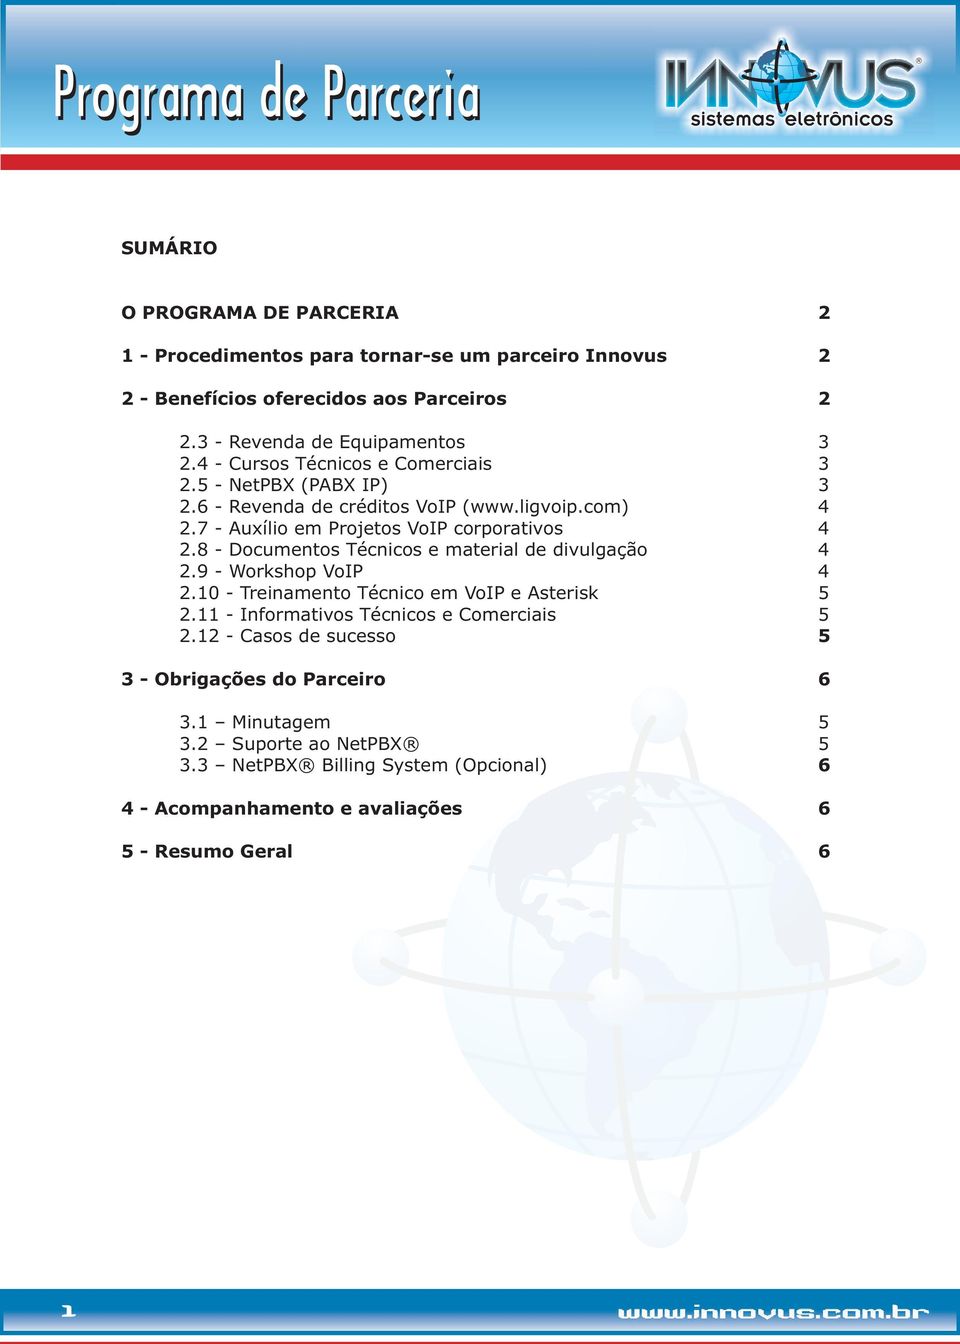 8 - Documentos Técnicos e material de divulgação 4 2.9 - Workshop VoIP 4 2.10 - Treinamento Técnico em VoIP e Asterisk 5 2.11 - Informativos Técnicos e Comerciais 5 2.